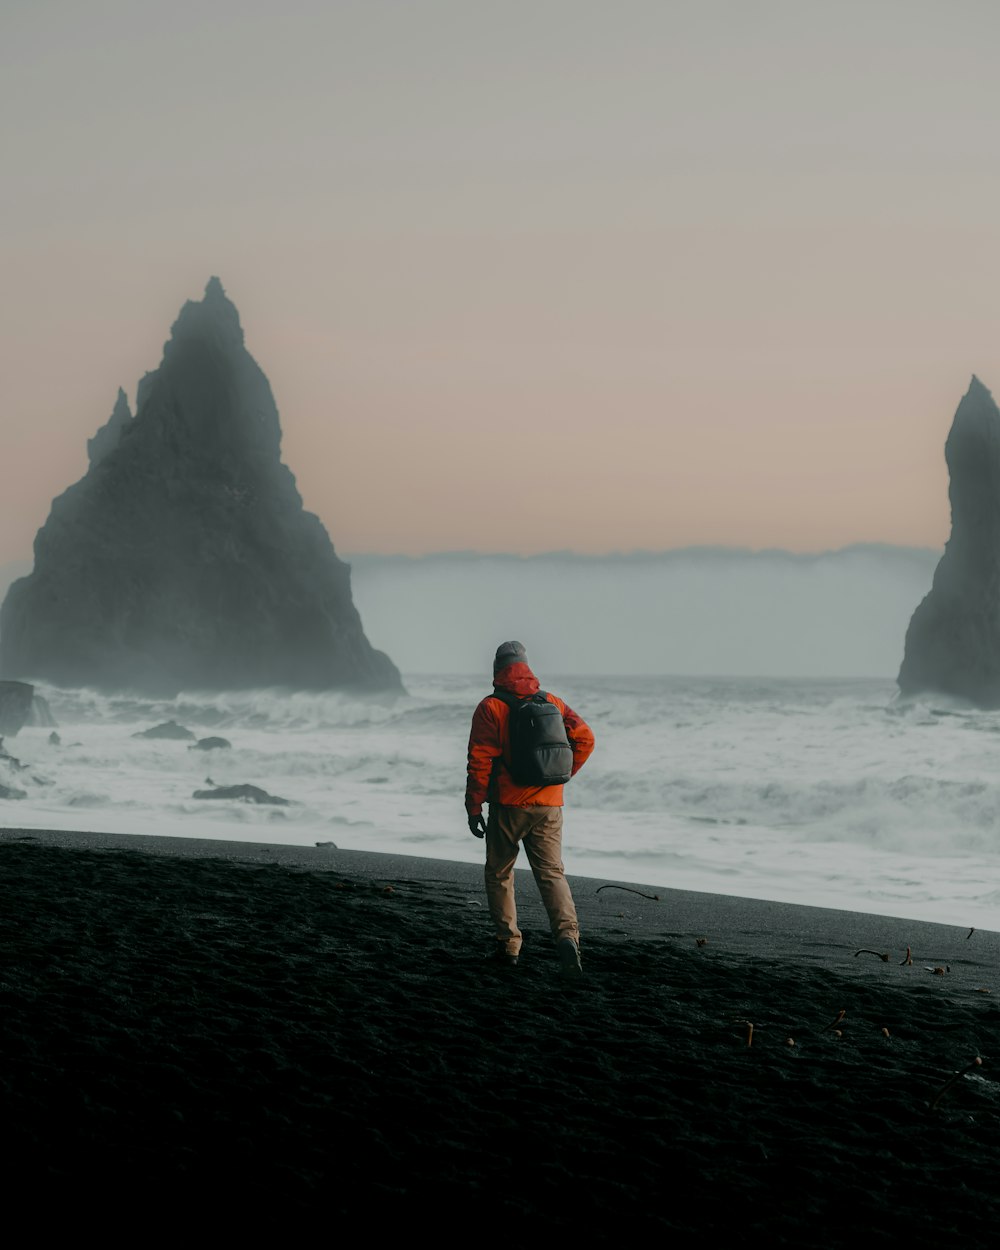 eine Person, die an einem Strand in der Nähe des Ozeans spazieren geht